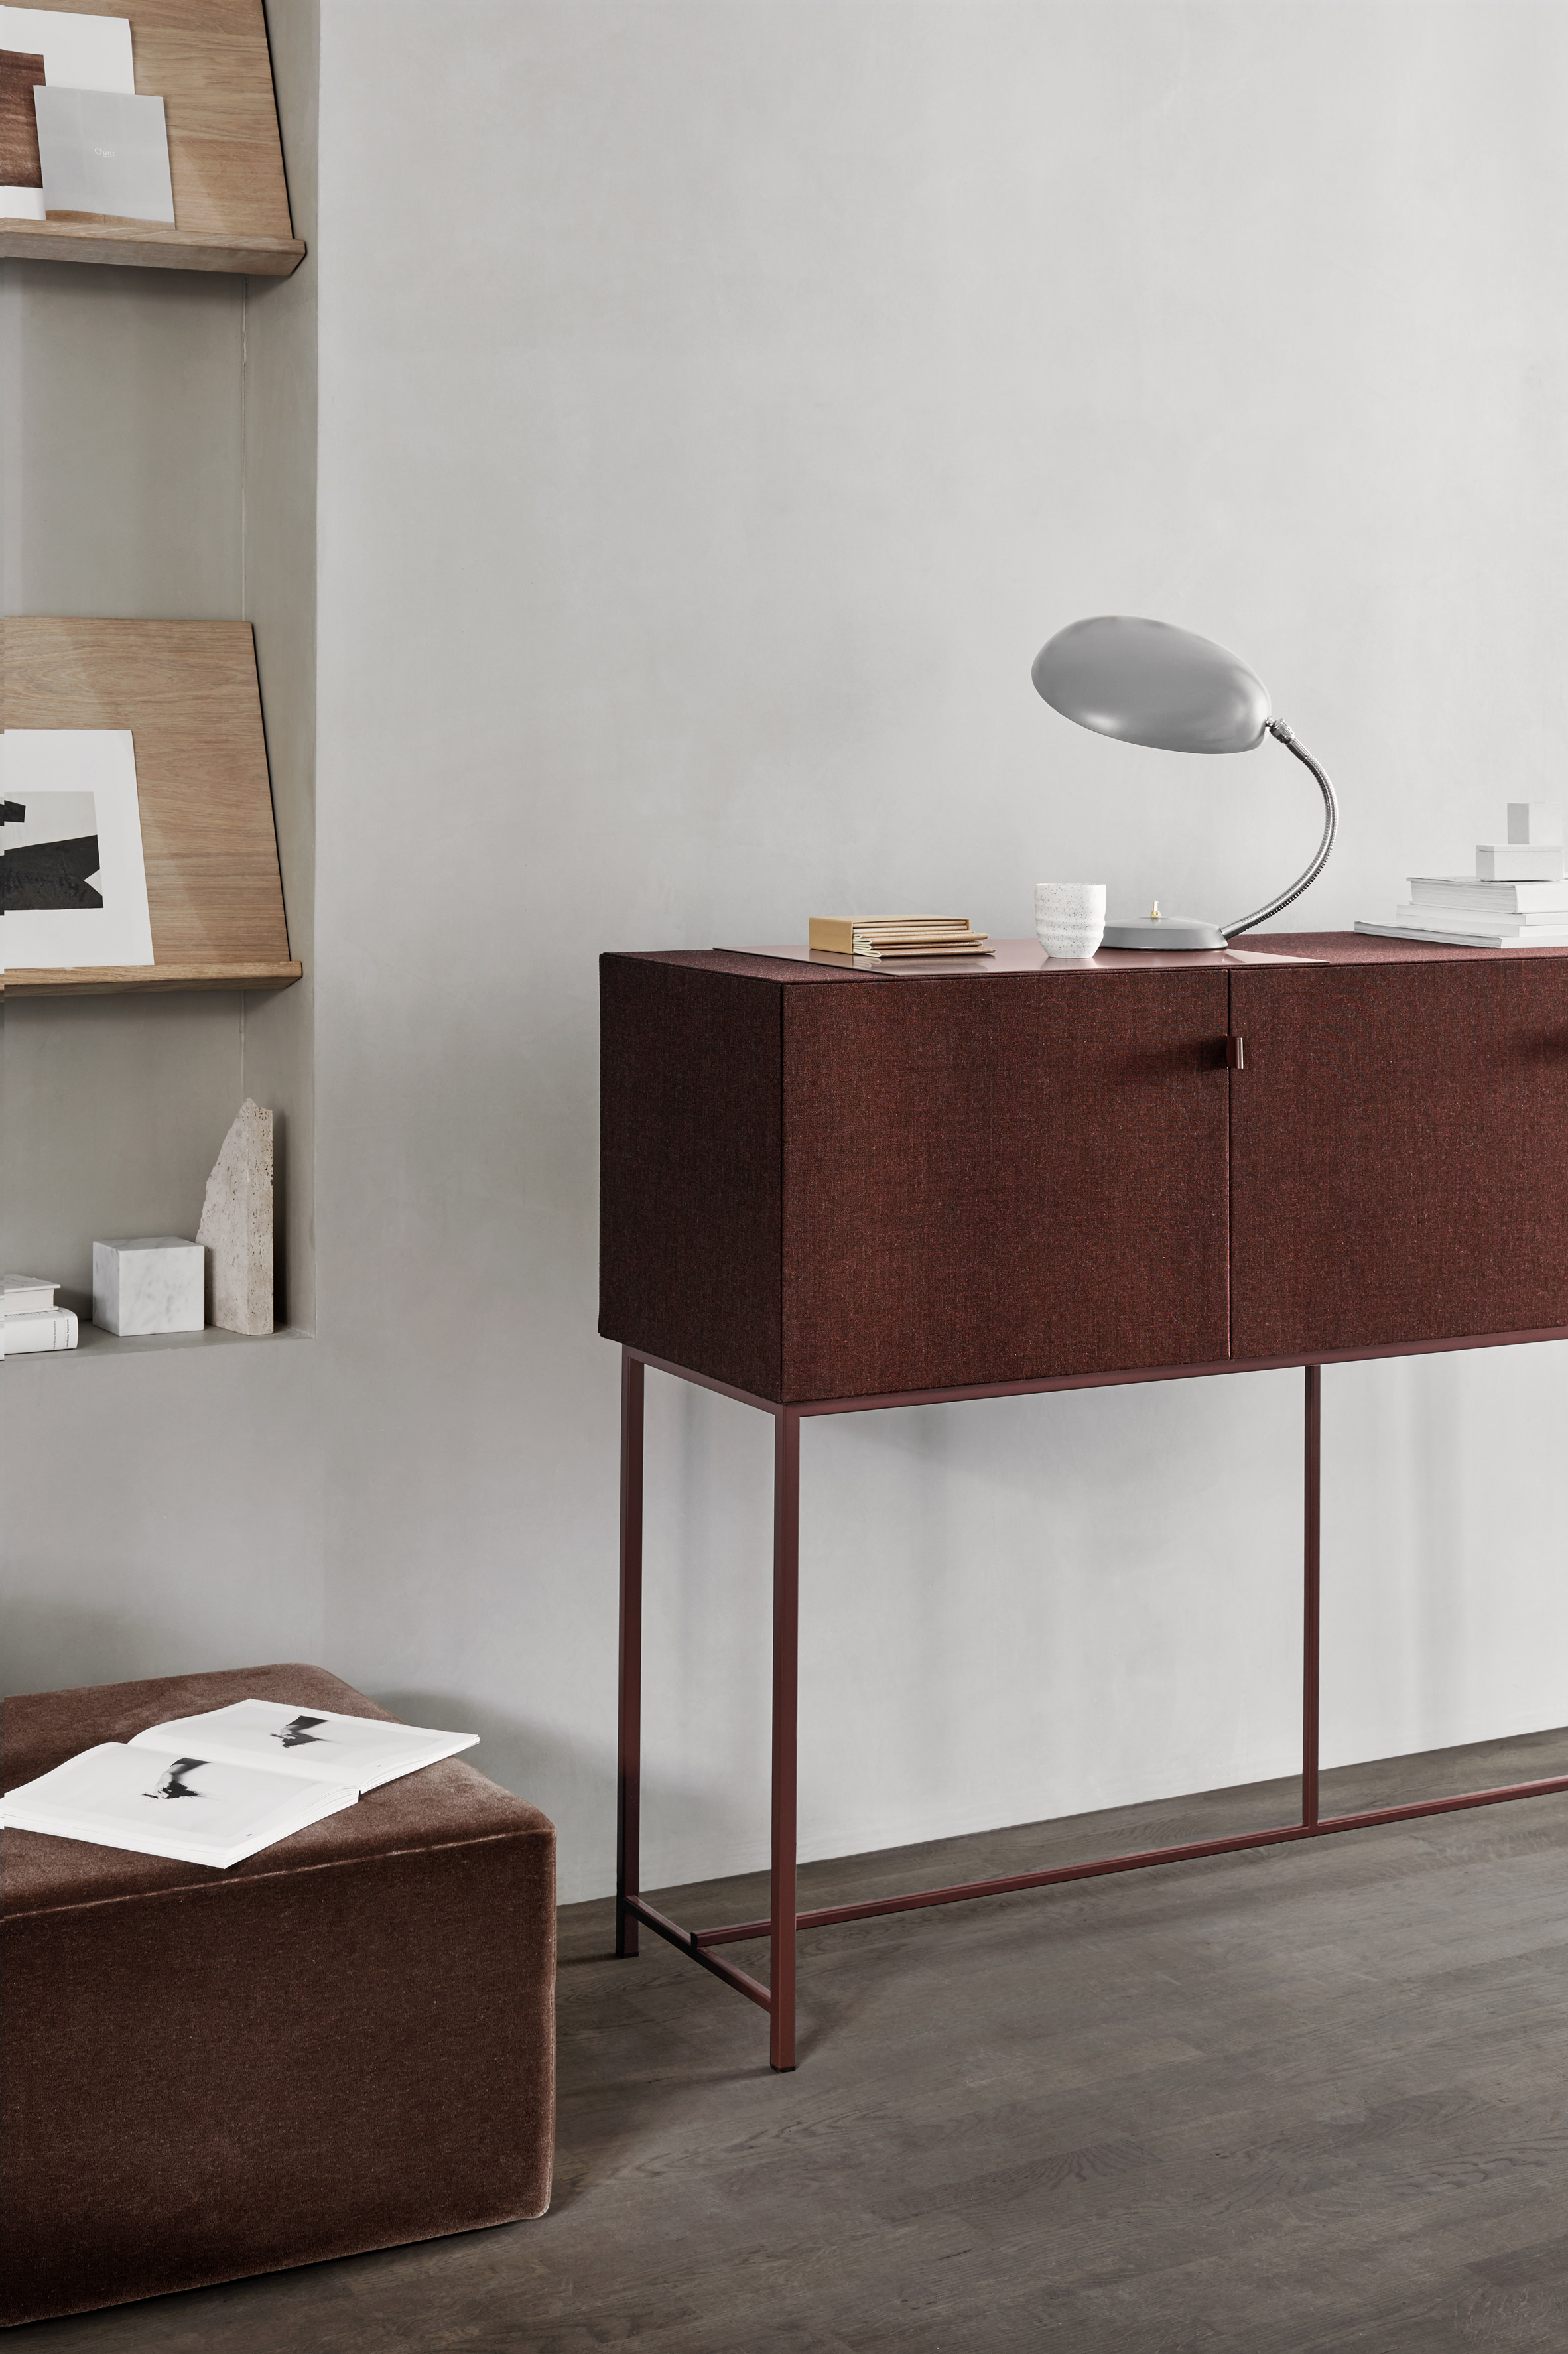 tone-cabinets-norm-architects-zilenzio-design-furniture-cabinets_dezeen_2364_col_8